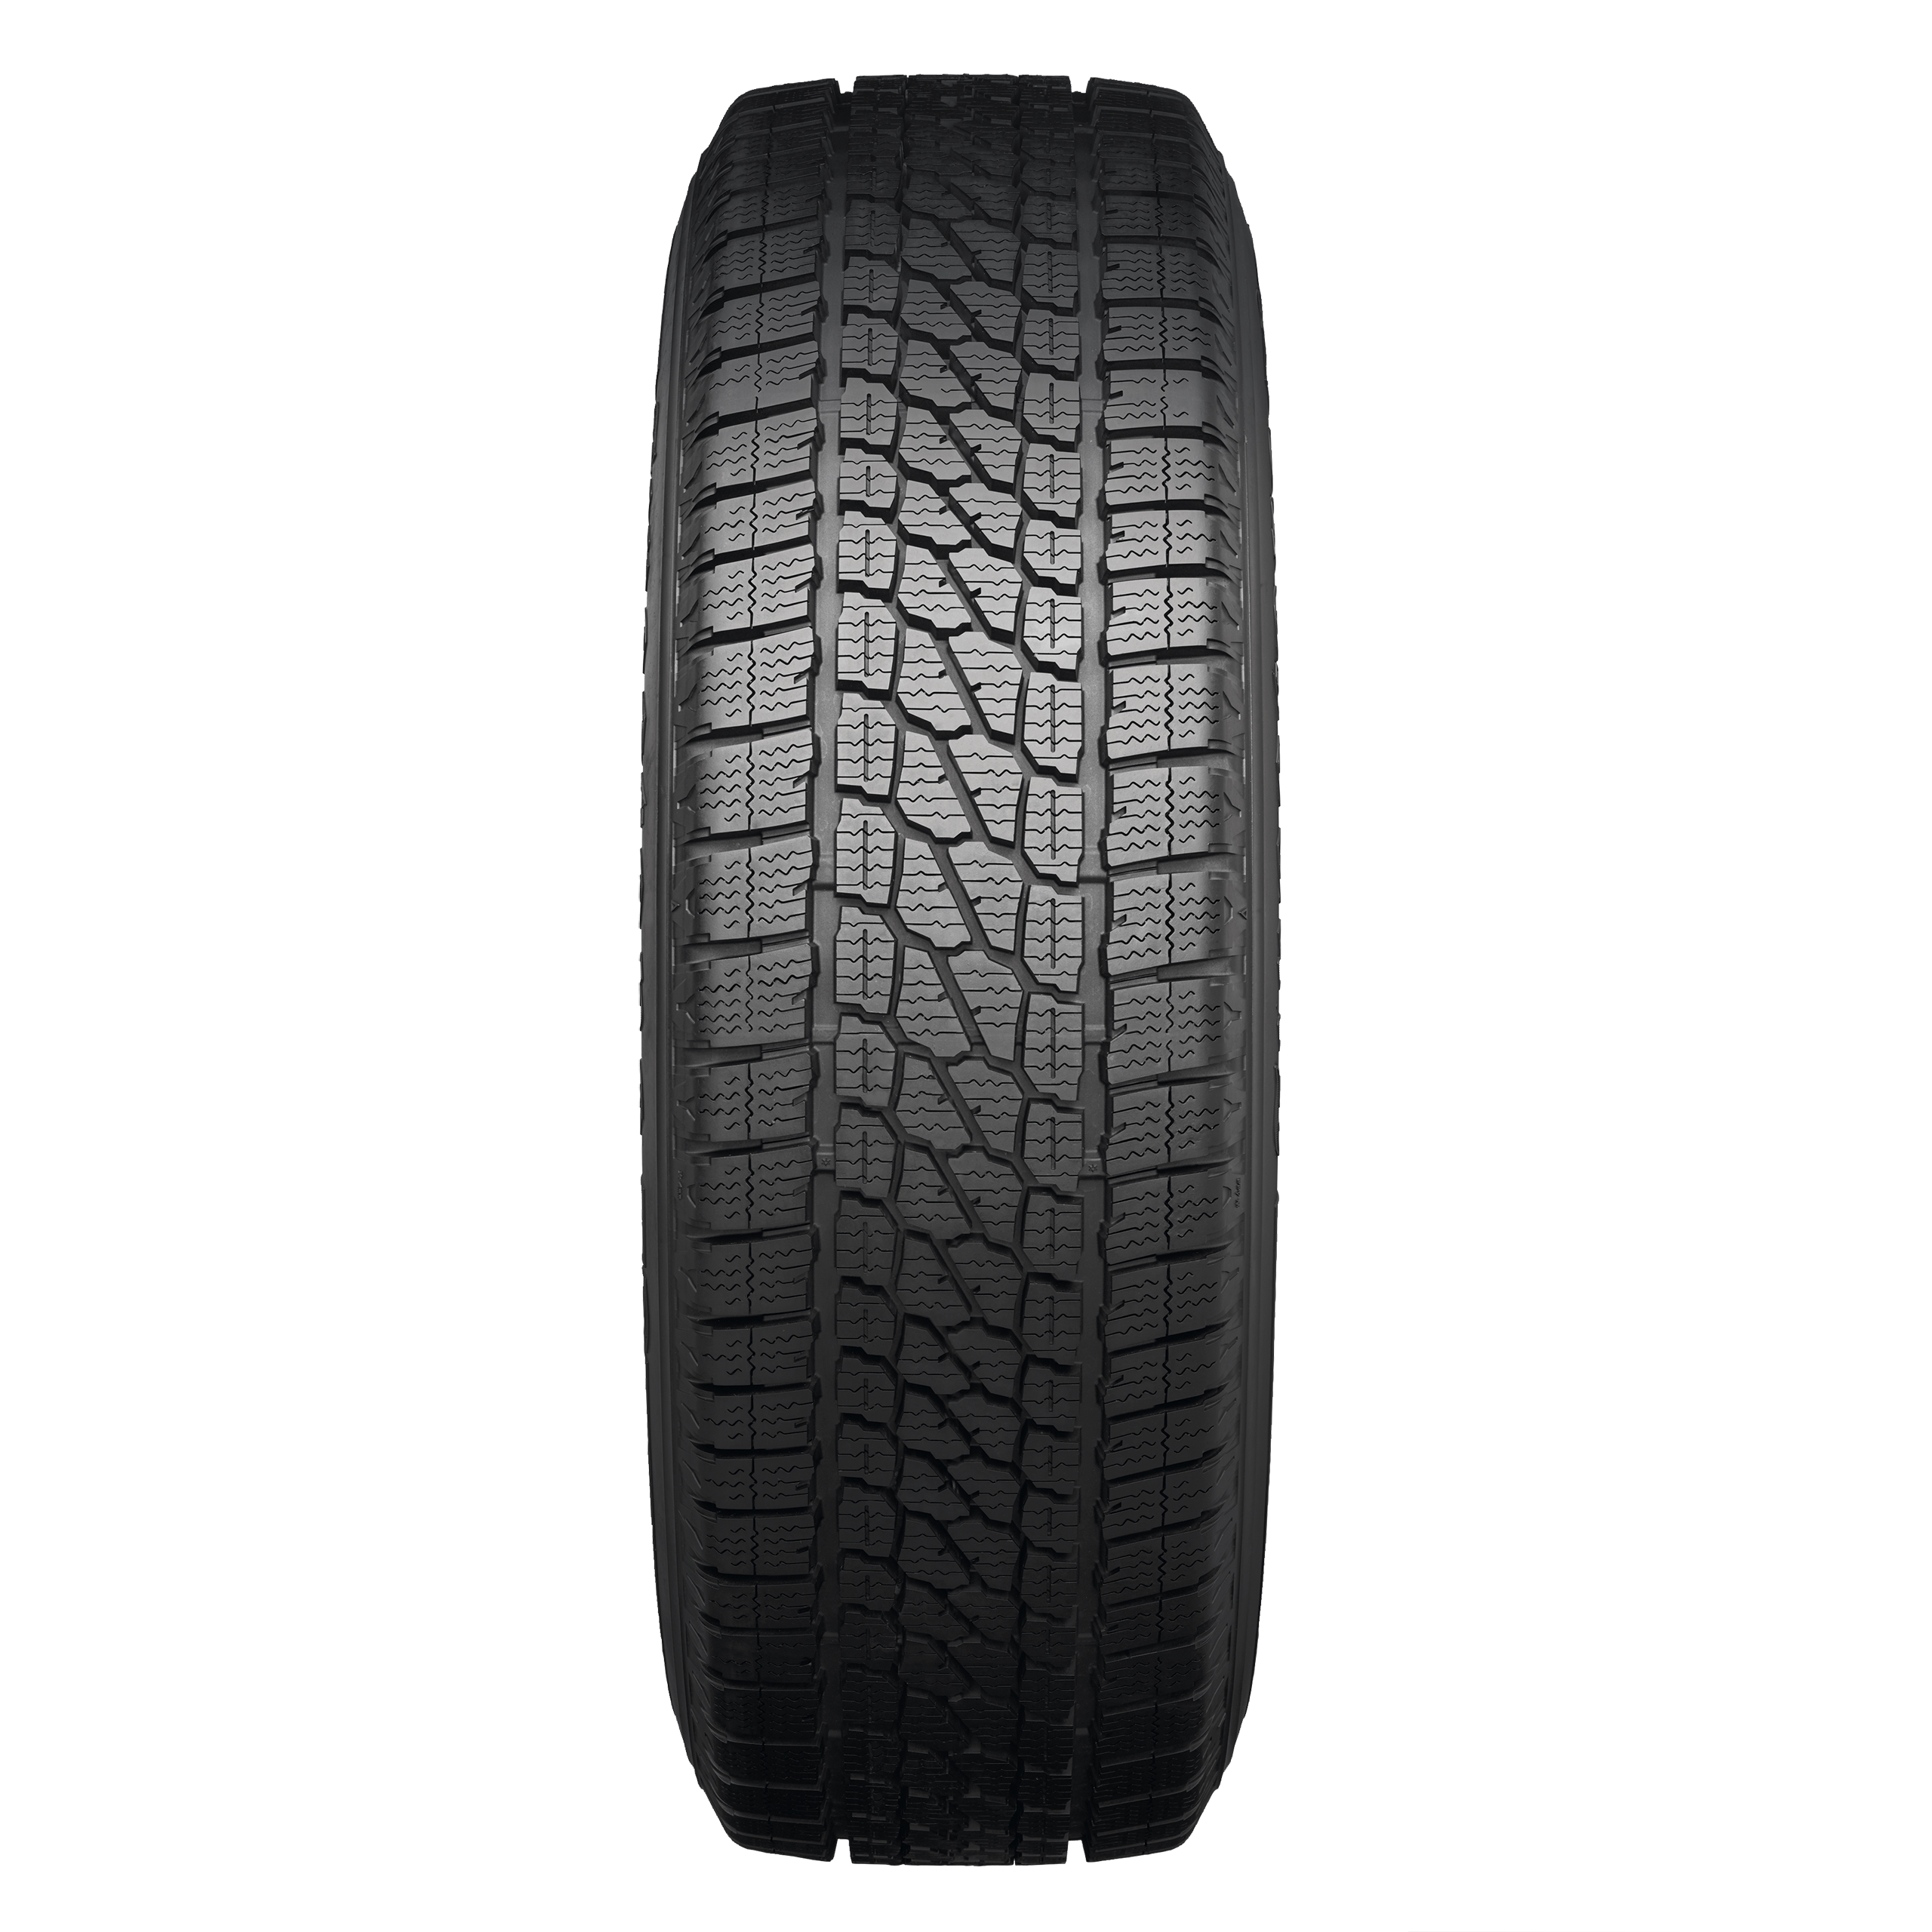 Independent comparison tyre Vanhawk Firestone Winter | What 2 Tyre |